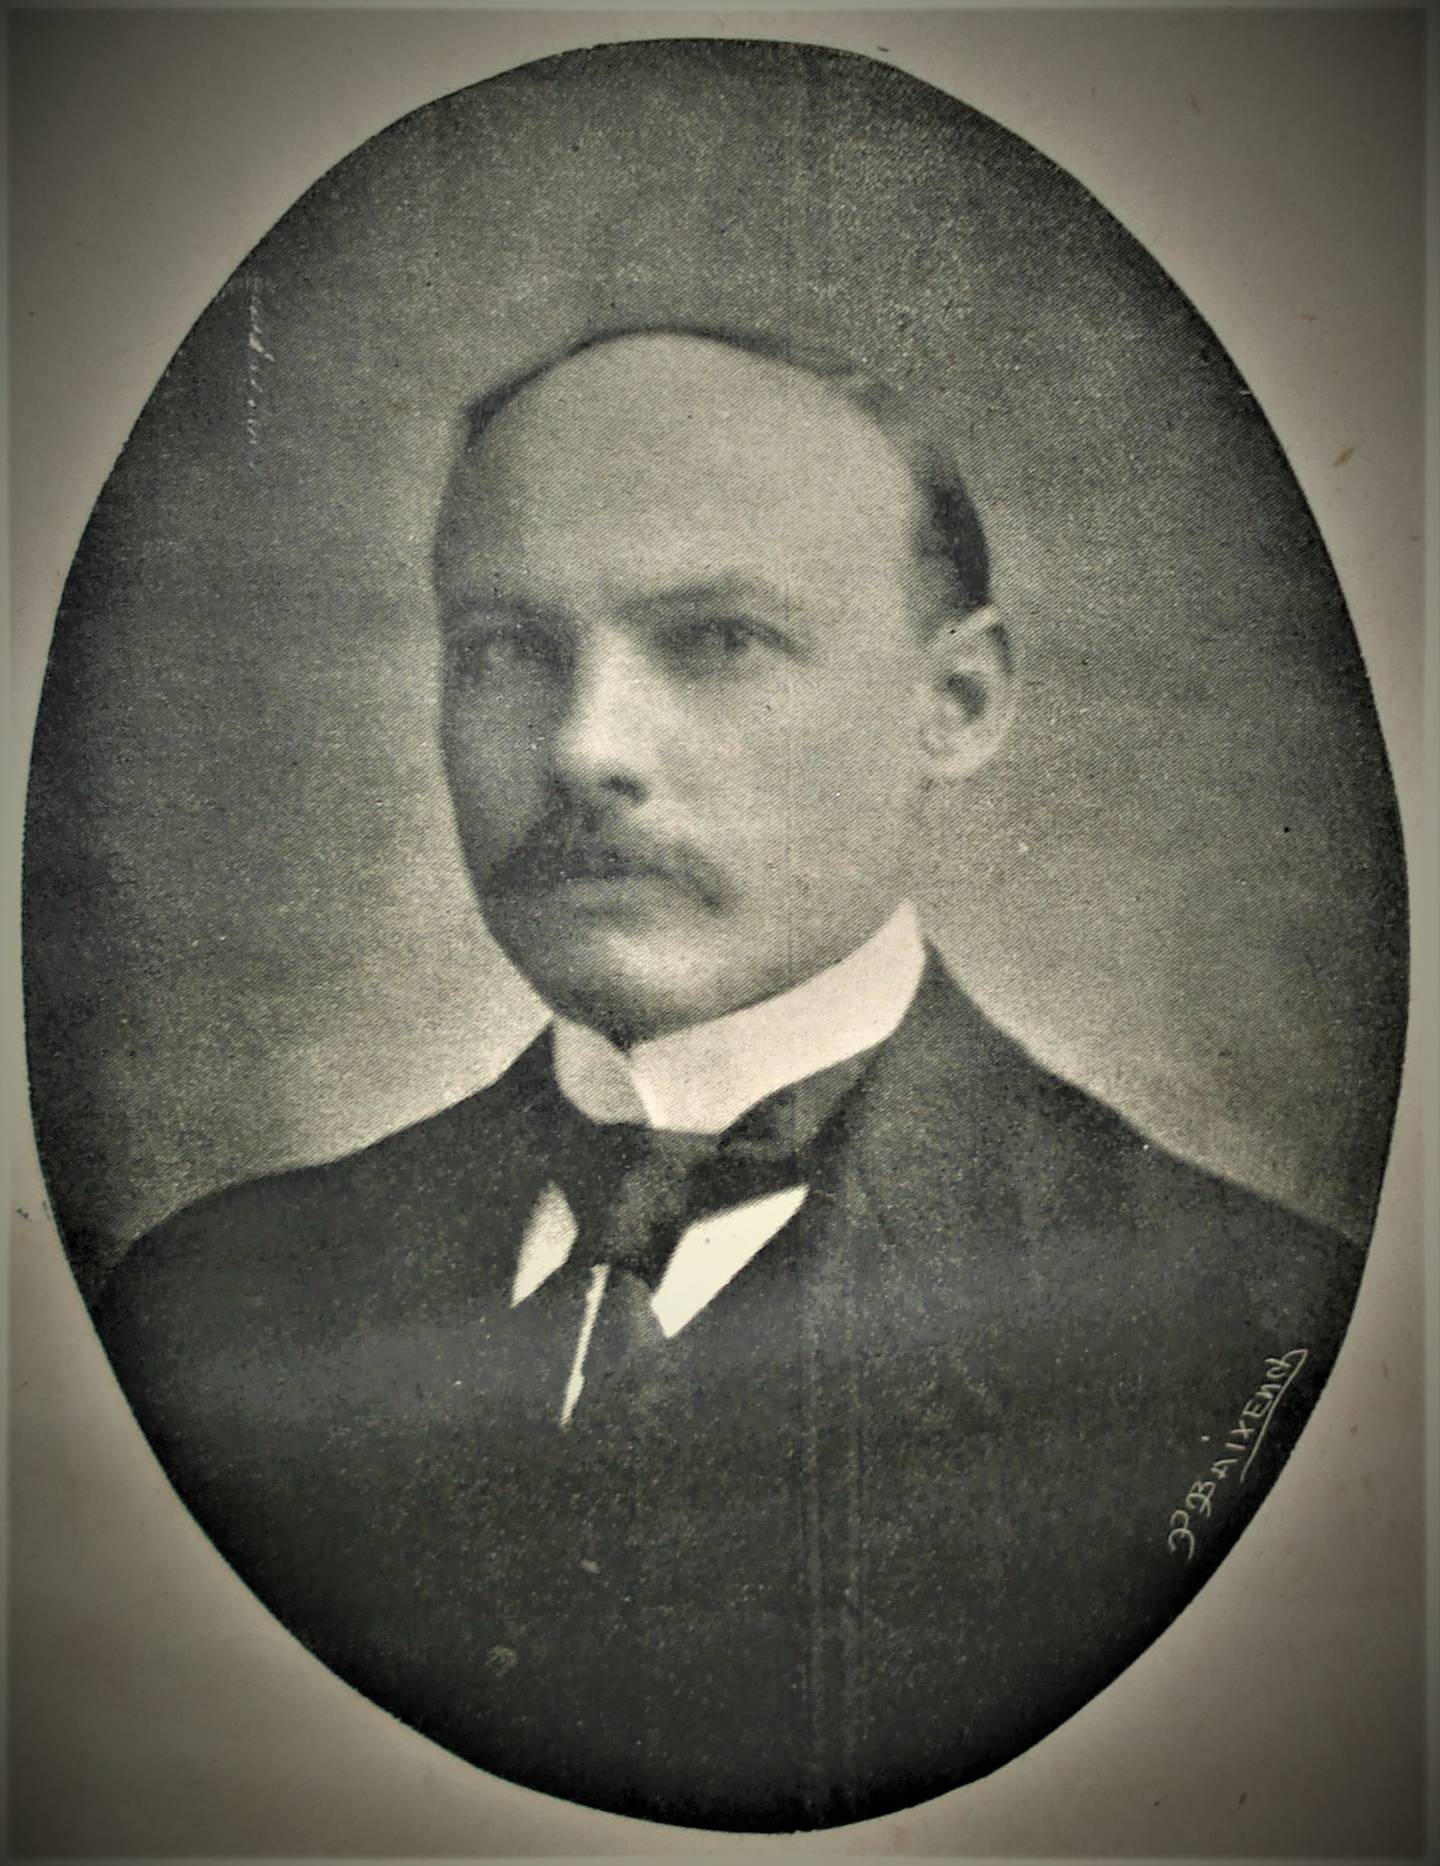 Retrato del intelectual costarricense Rogelio Fernández Güell (1883-1918). Rogelio Fernández, “Poesías”, 1918.